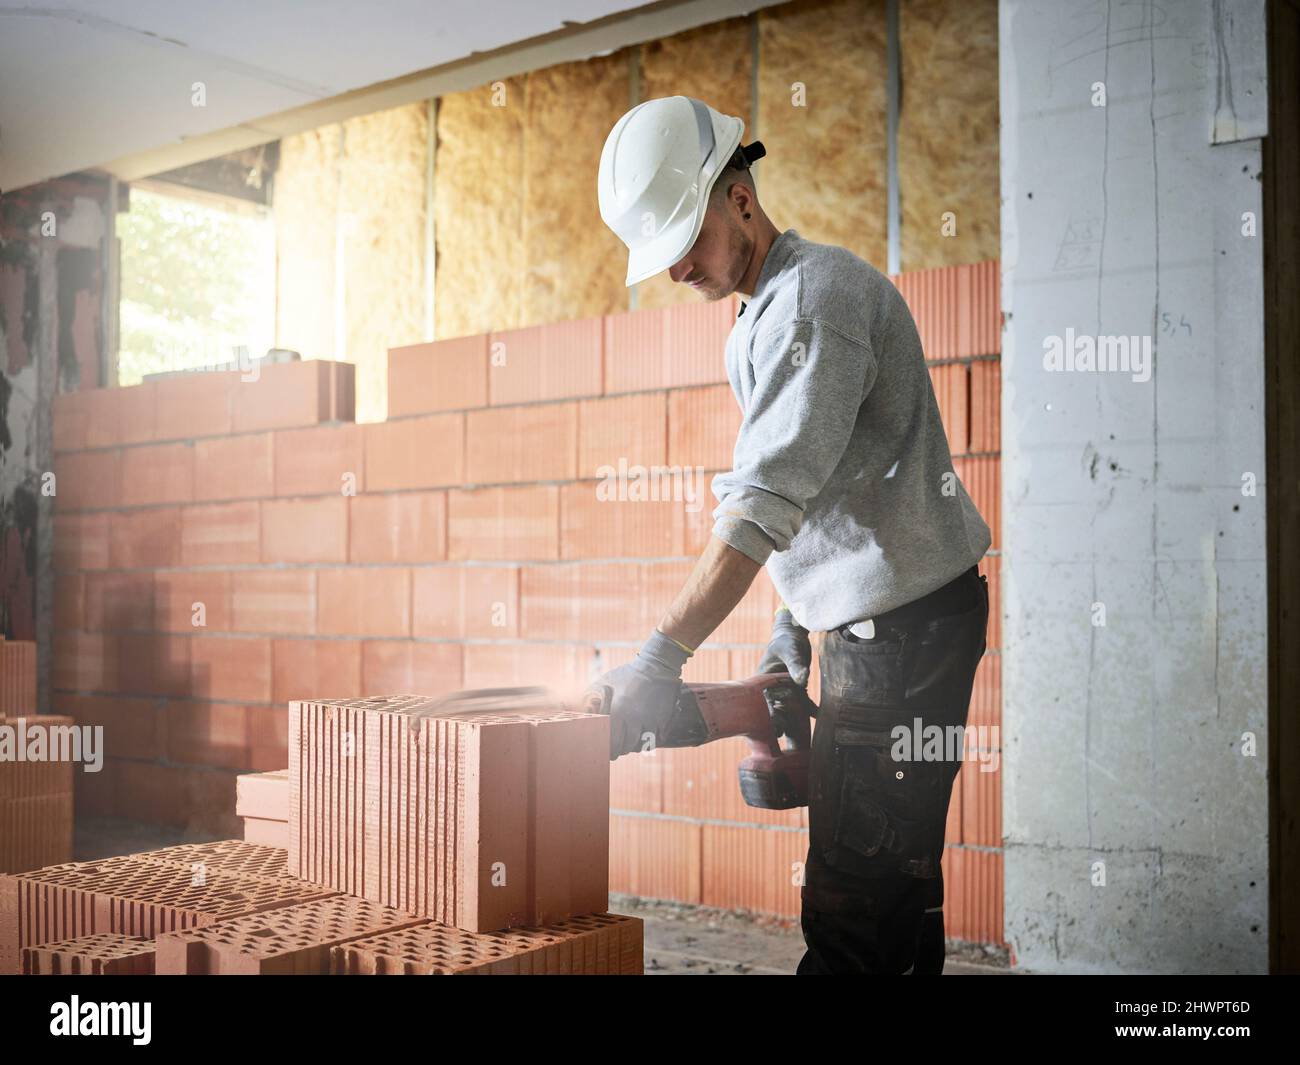 Ladrillo de corte de bricklayer con herramienta de potencia en el lugar de construcción Foto de stock